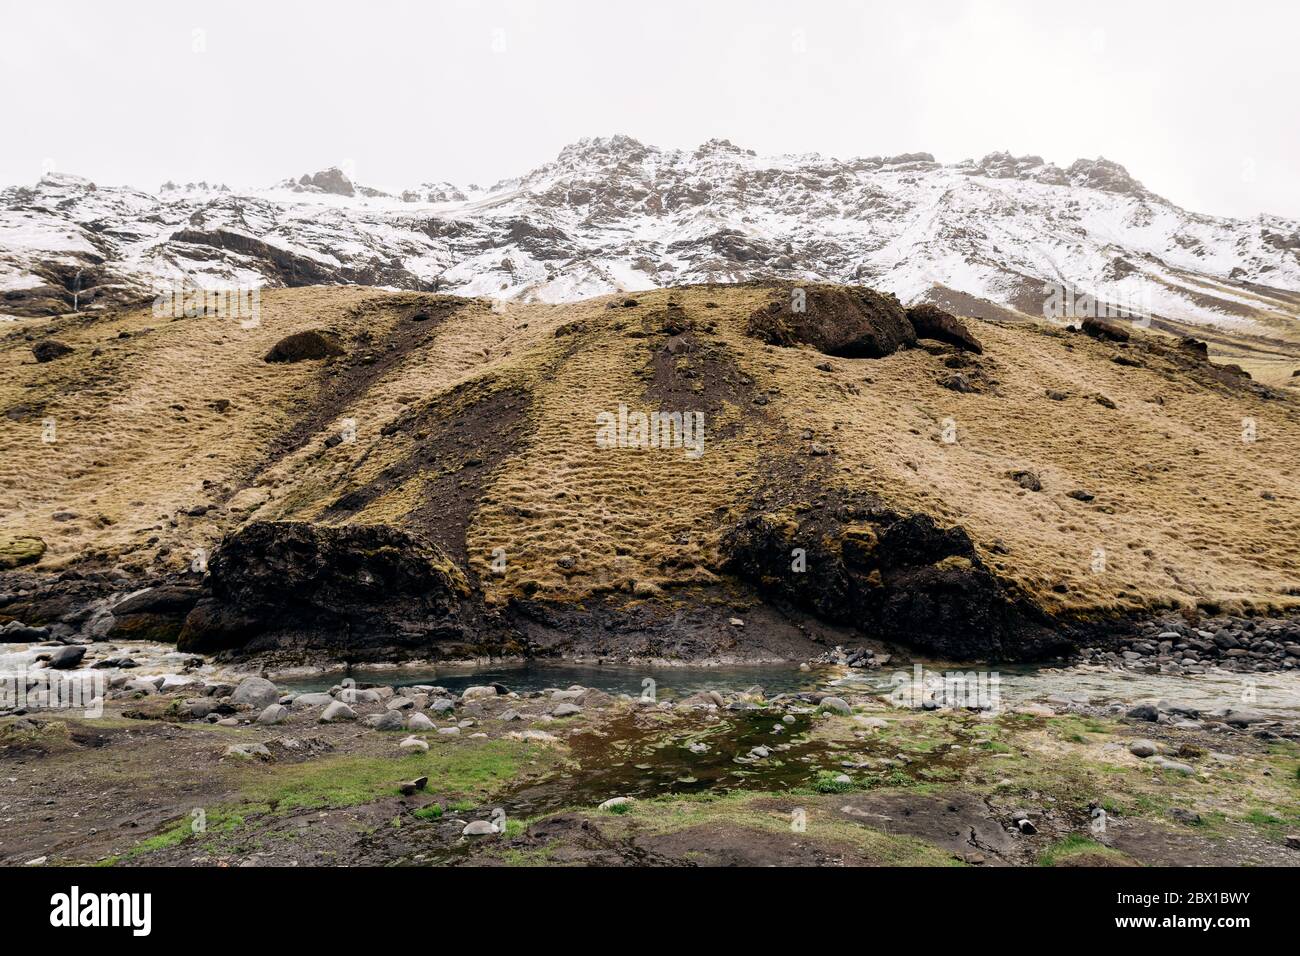 Rivière de montagne au pied de la montagne avec un sommet enneigé. Herbe jaune sèche sur les montagnes en mai en Islande. Banque D'Images